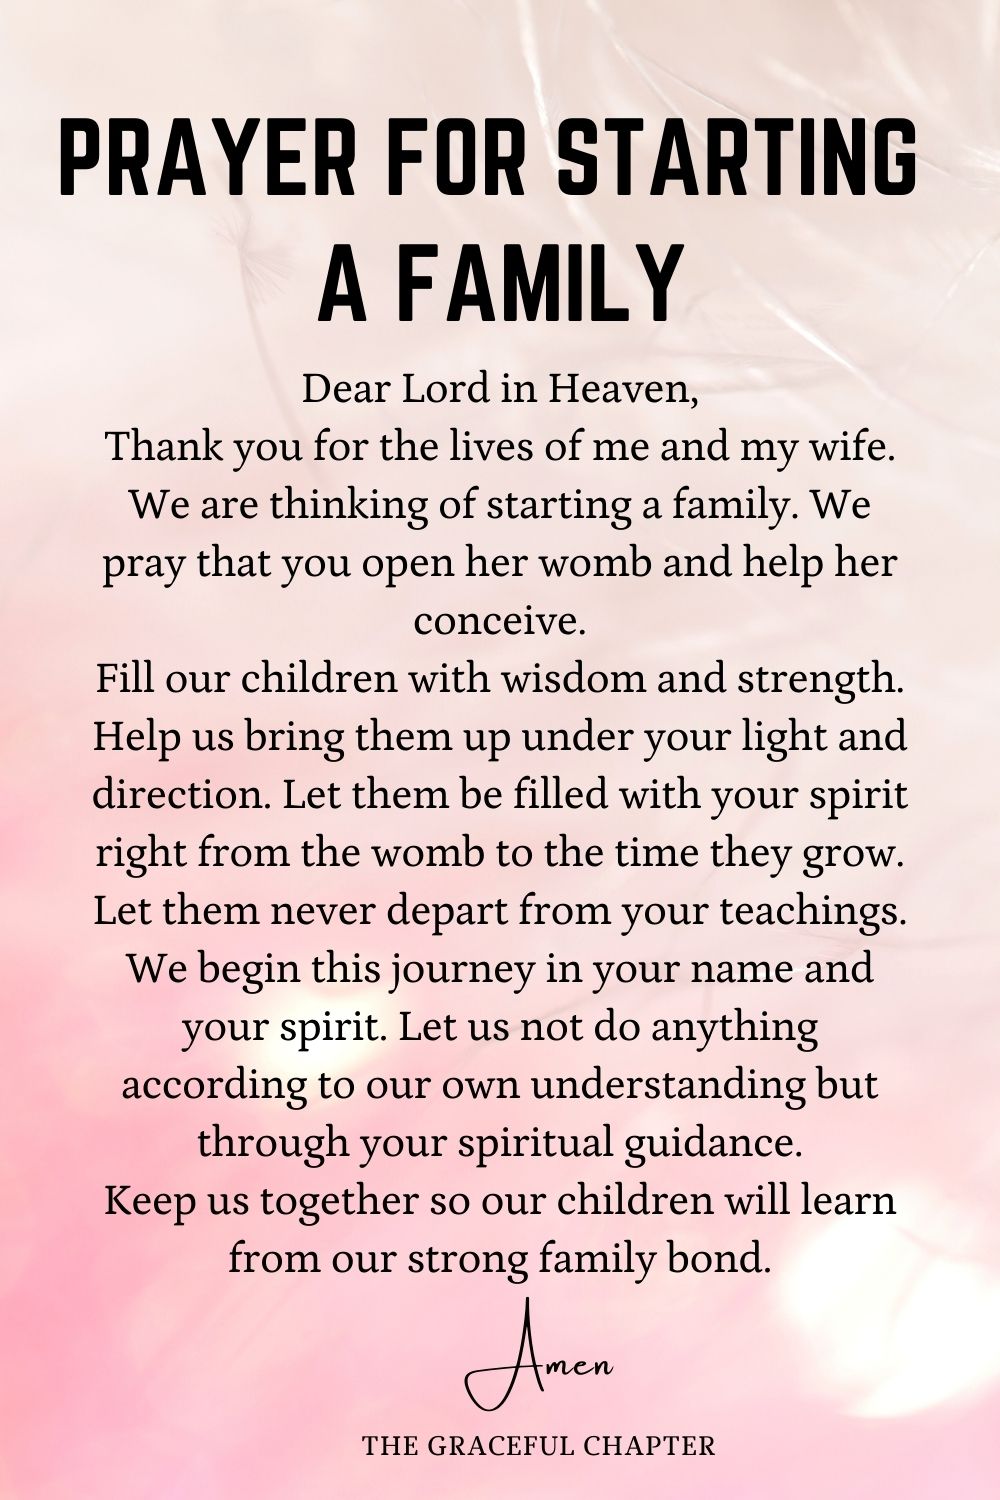 Prayer for starting a family